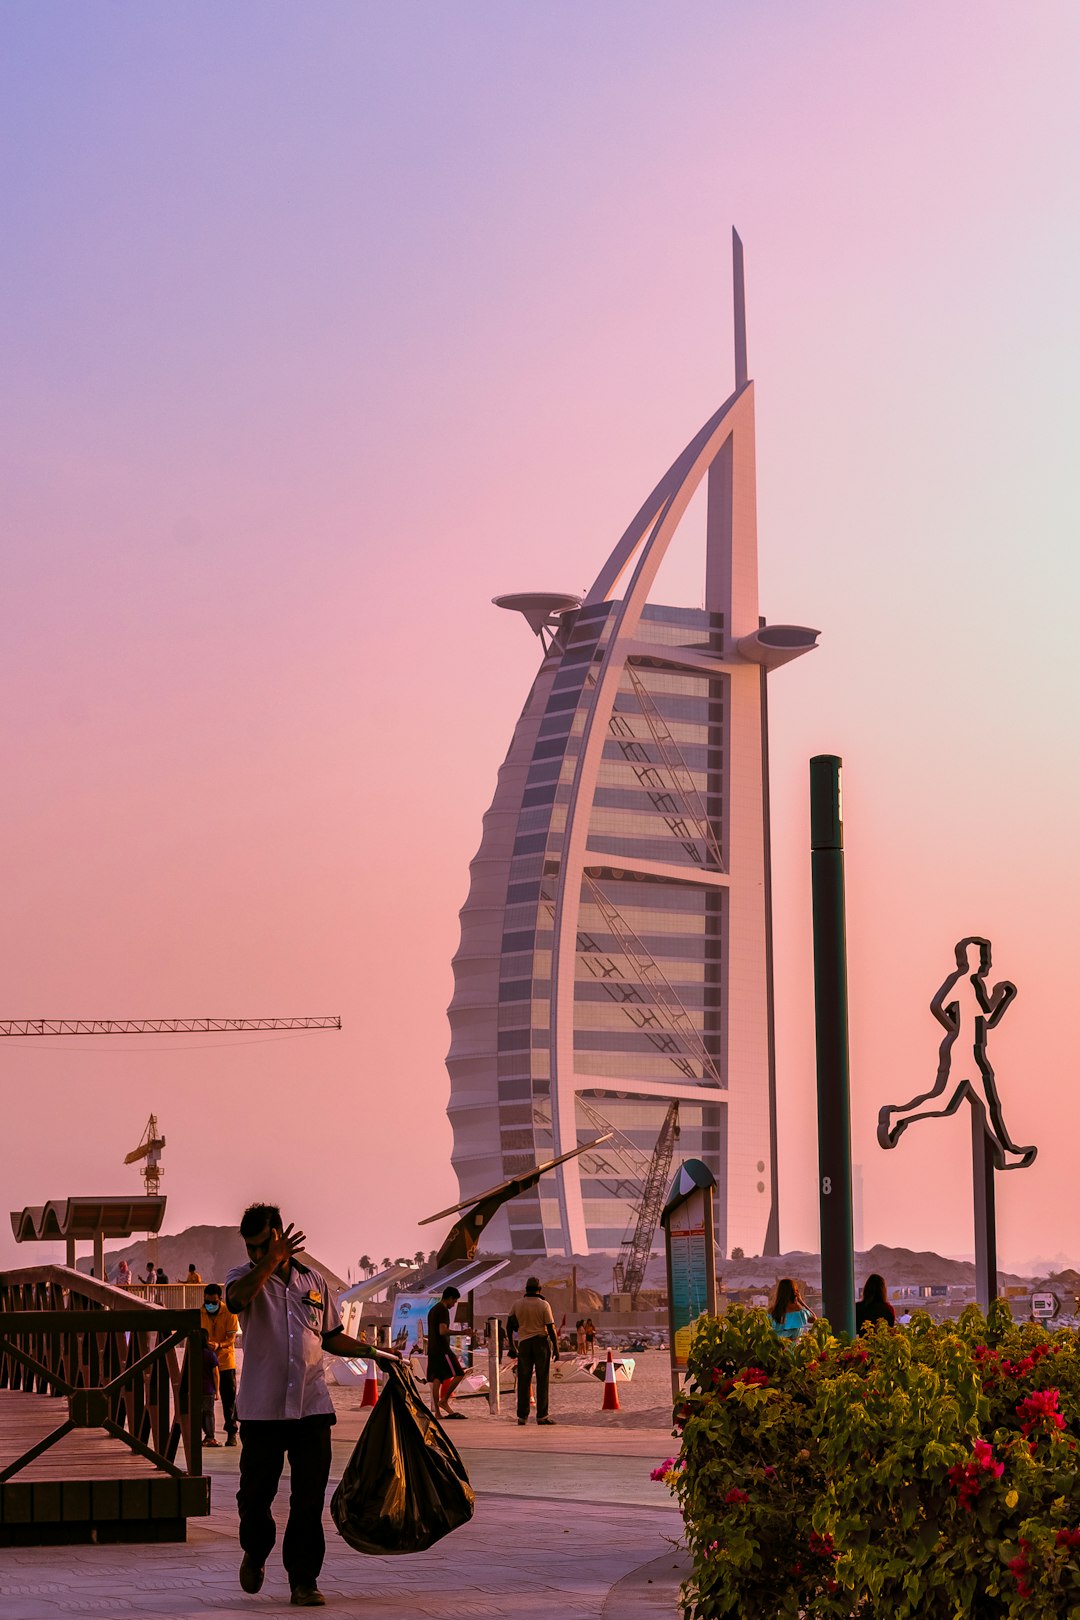 Landmark photo spot Burj Al Arab Jumeirah - Jumeirah Street - Dubai - United Arab Emirates Dubai Marina Walk - Emaar